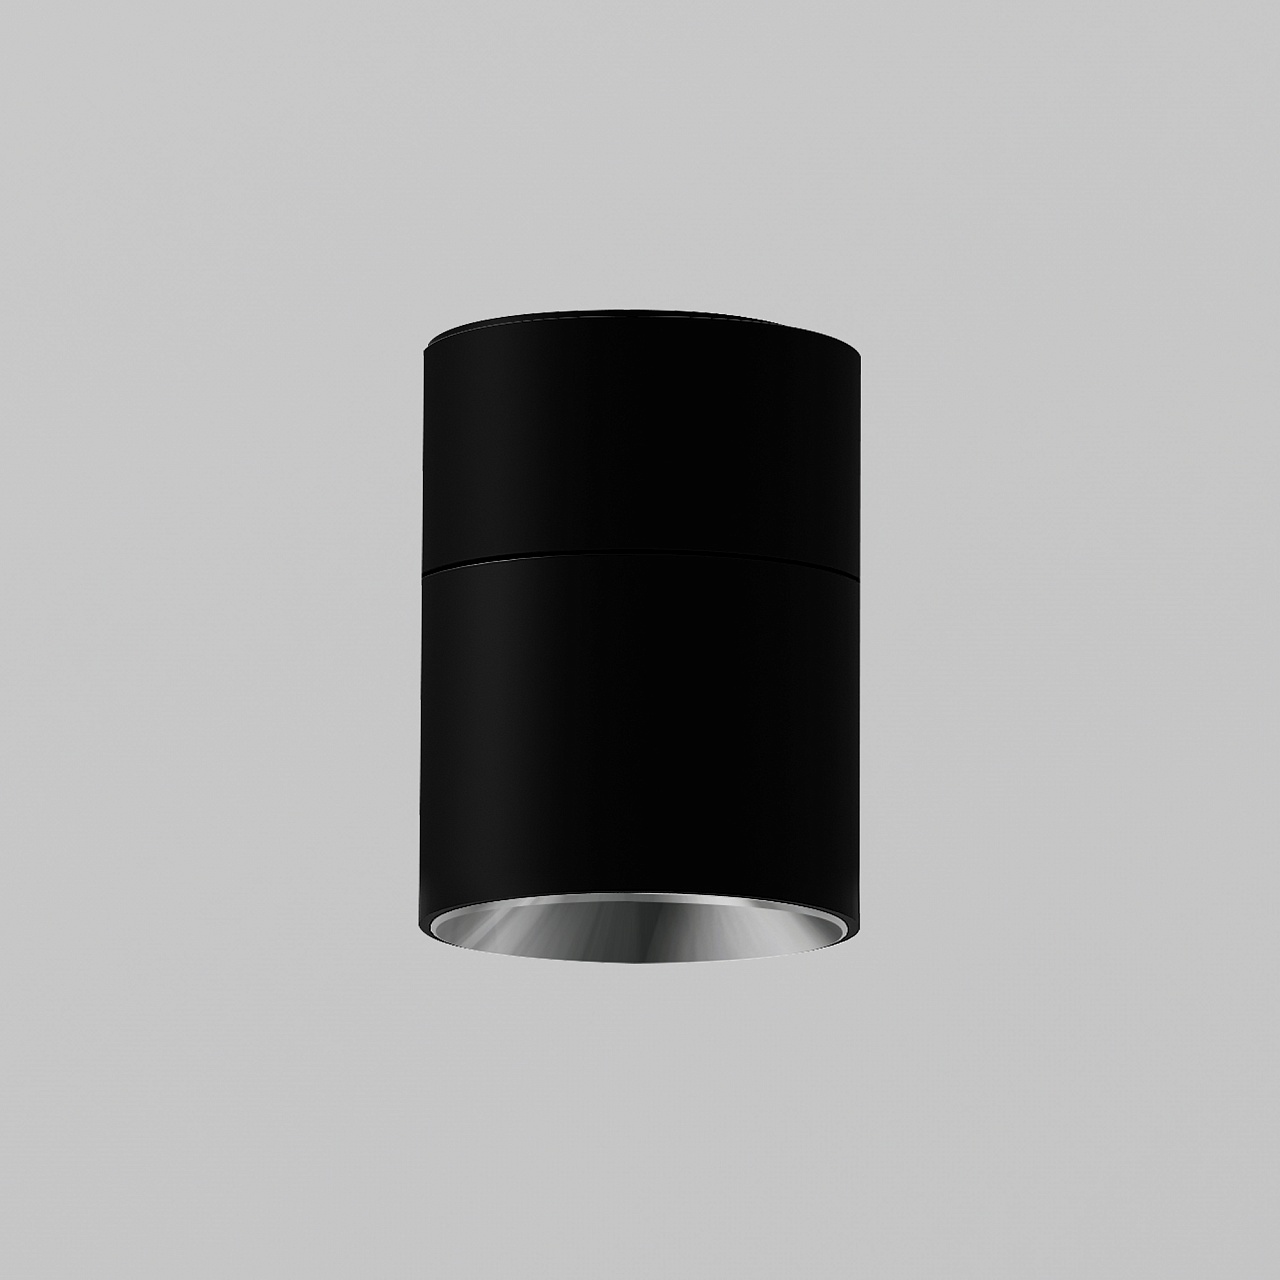 Накладной LED светильник 24° YLP-E20 Surface mounted downlight черный